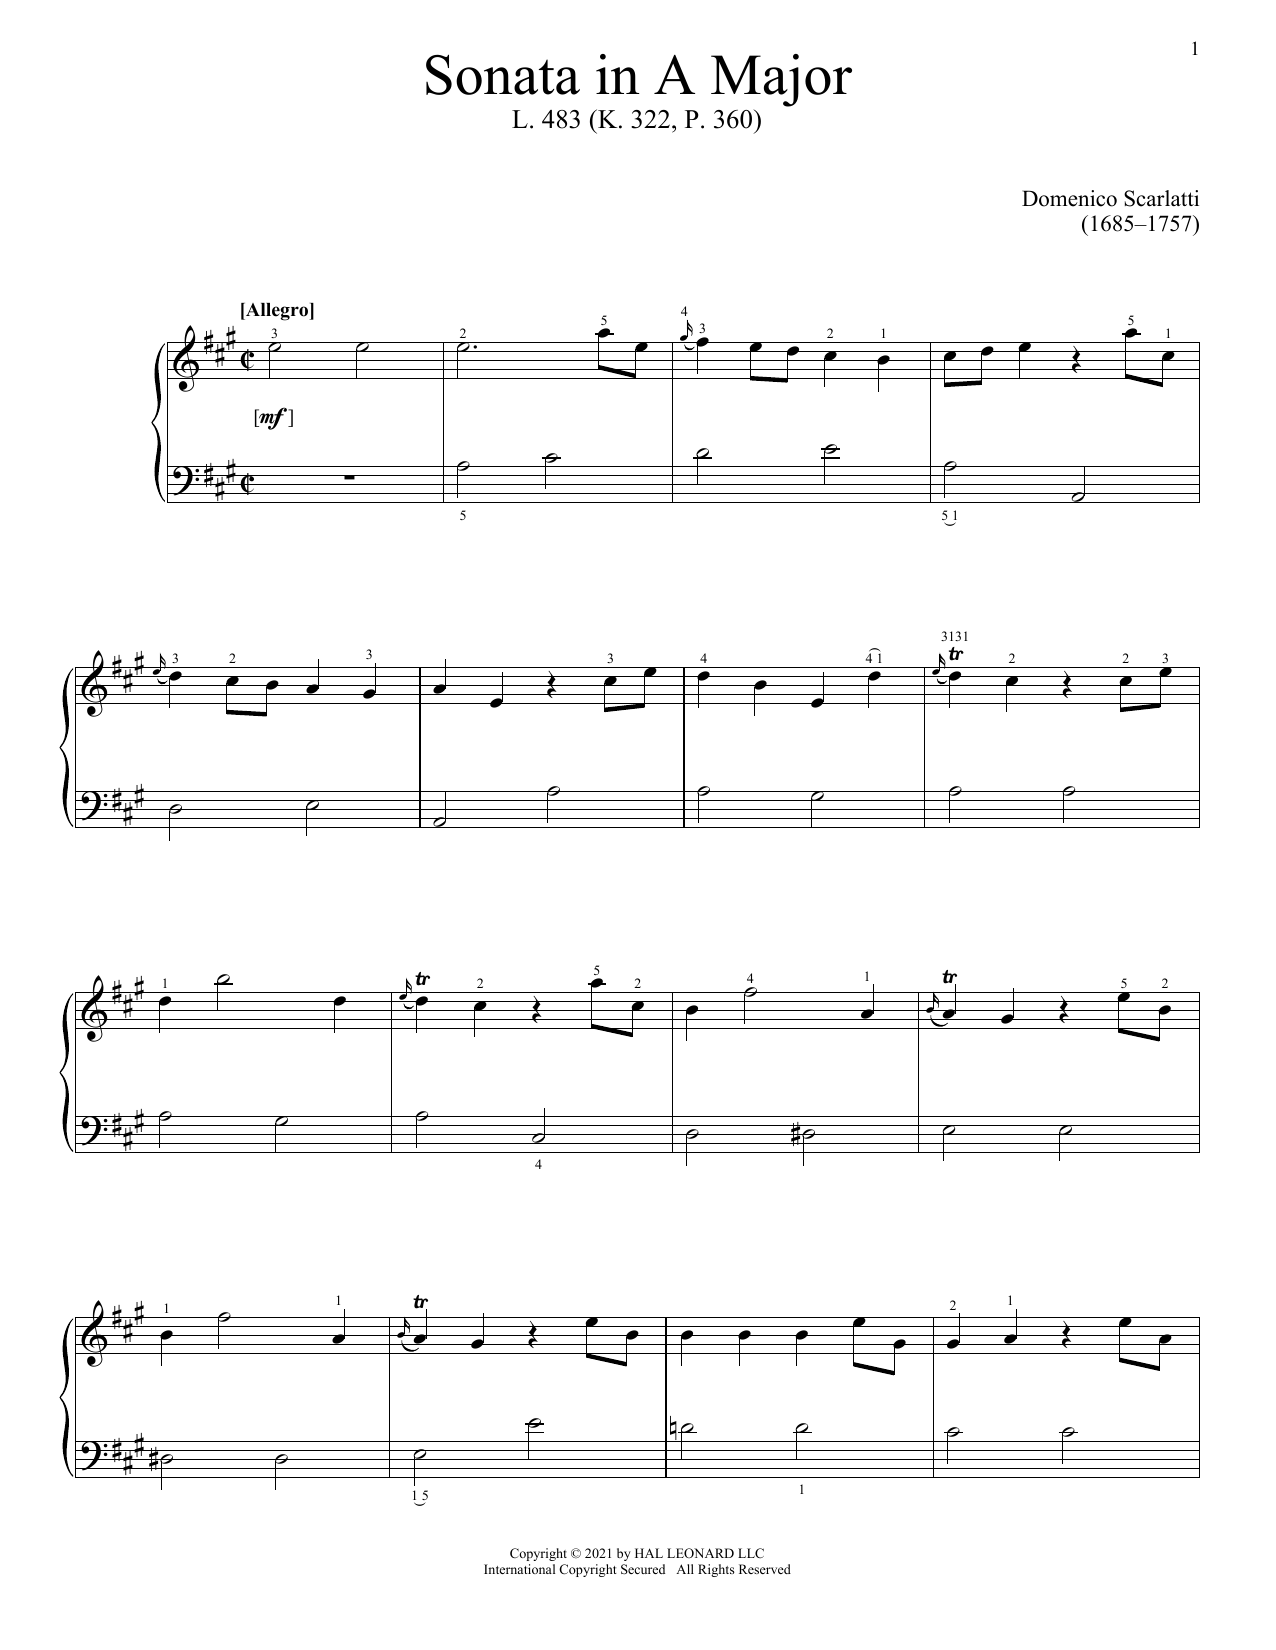 Download Domenico Scarlatti Sonata In A Major, L. 483 Sheet Music